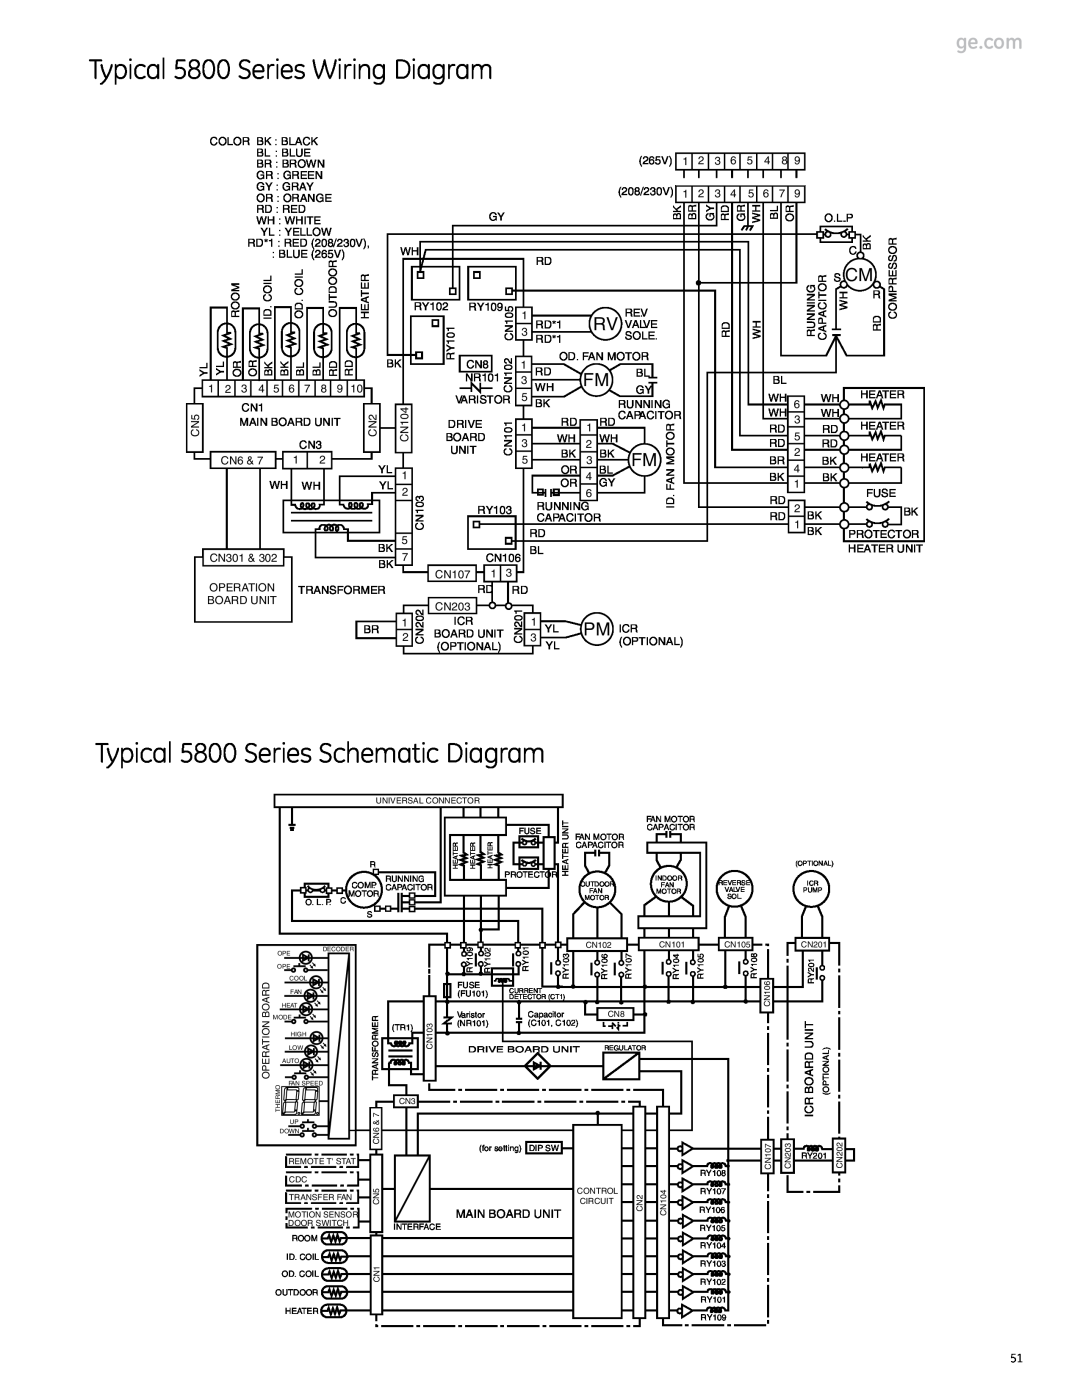 GE Monogram 3900 Series, 2900 Series Typical 5800 Series Schematic Diagram, Typical 5800 Series Wiring Diagram, Pm Icr 